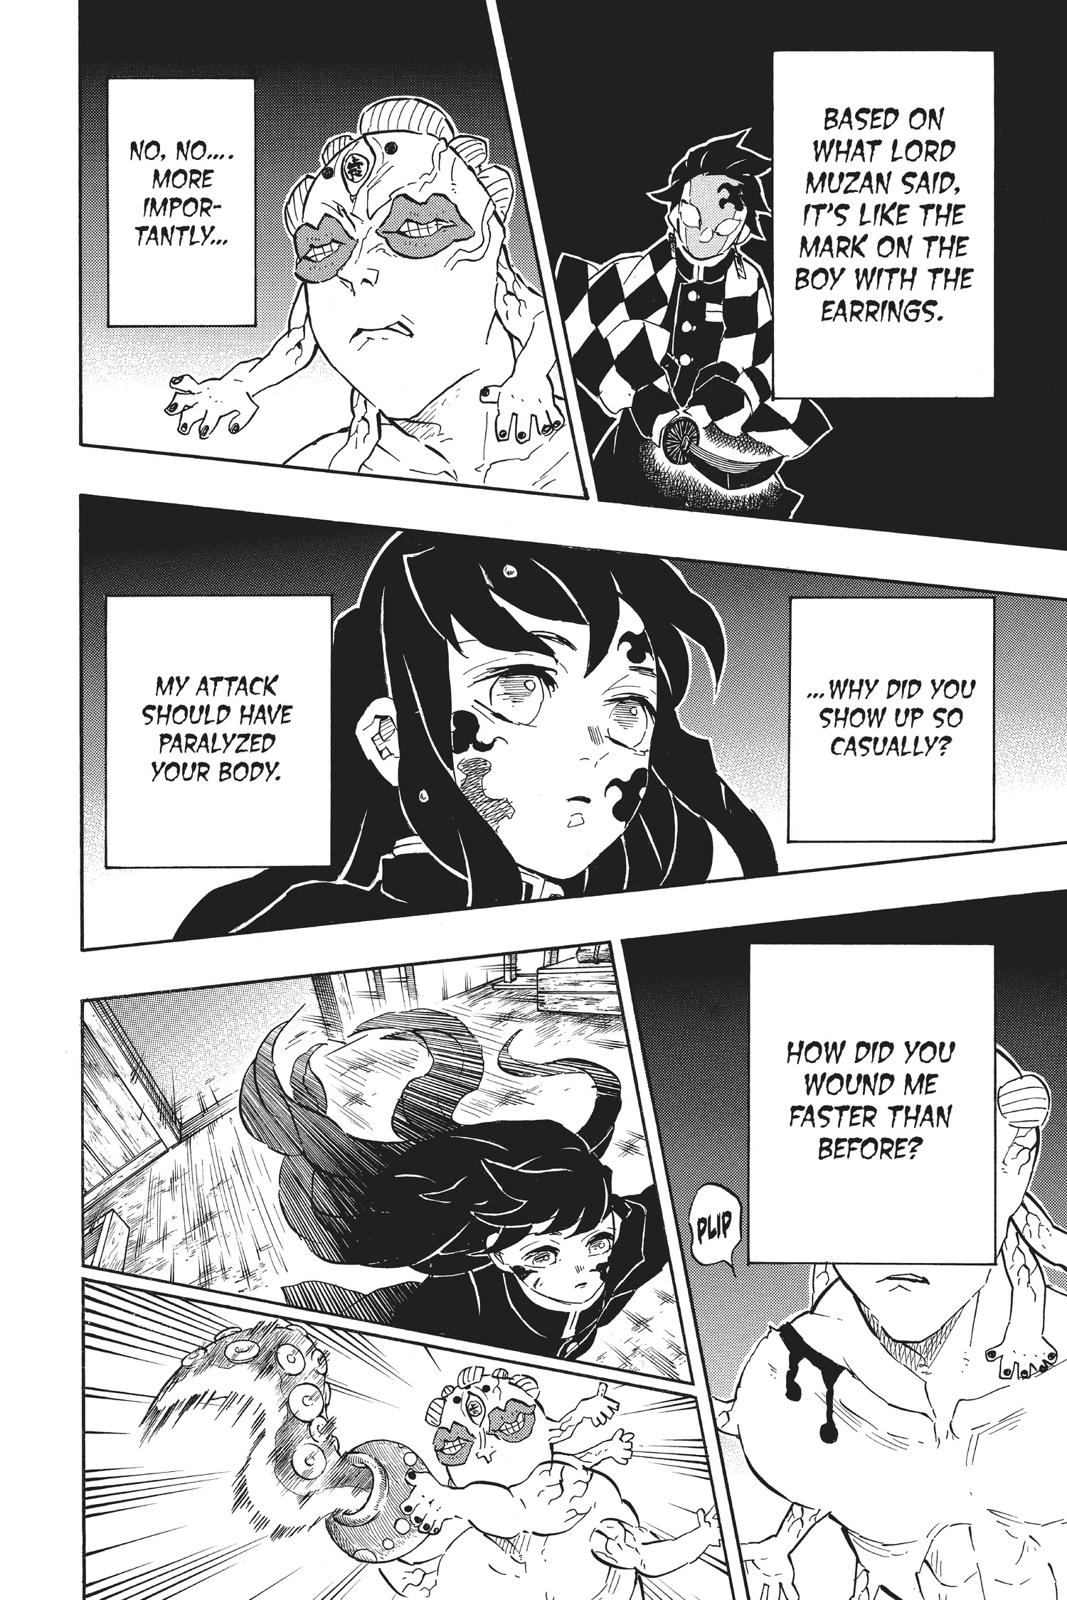 Demon Slayer Manga Manga Chapter - 119 - image 4